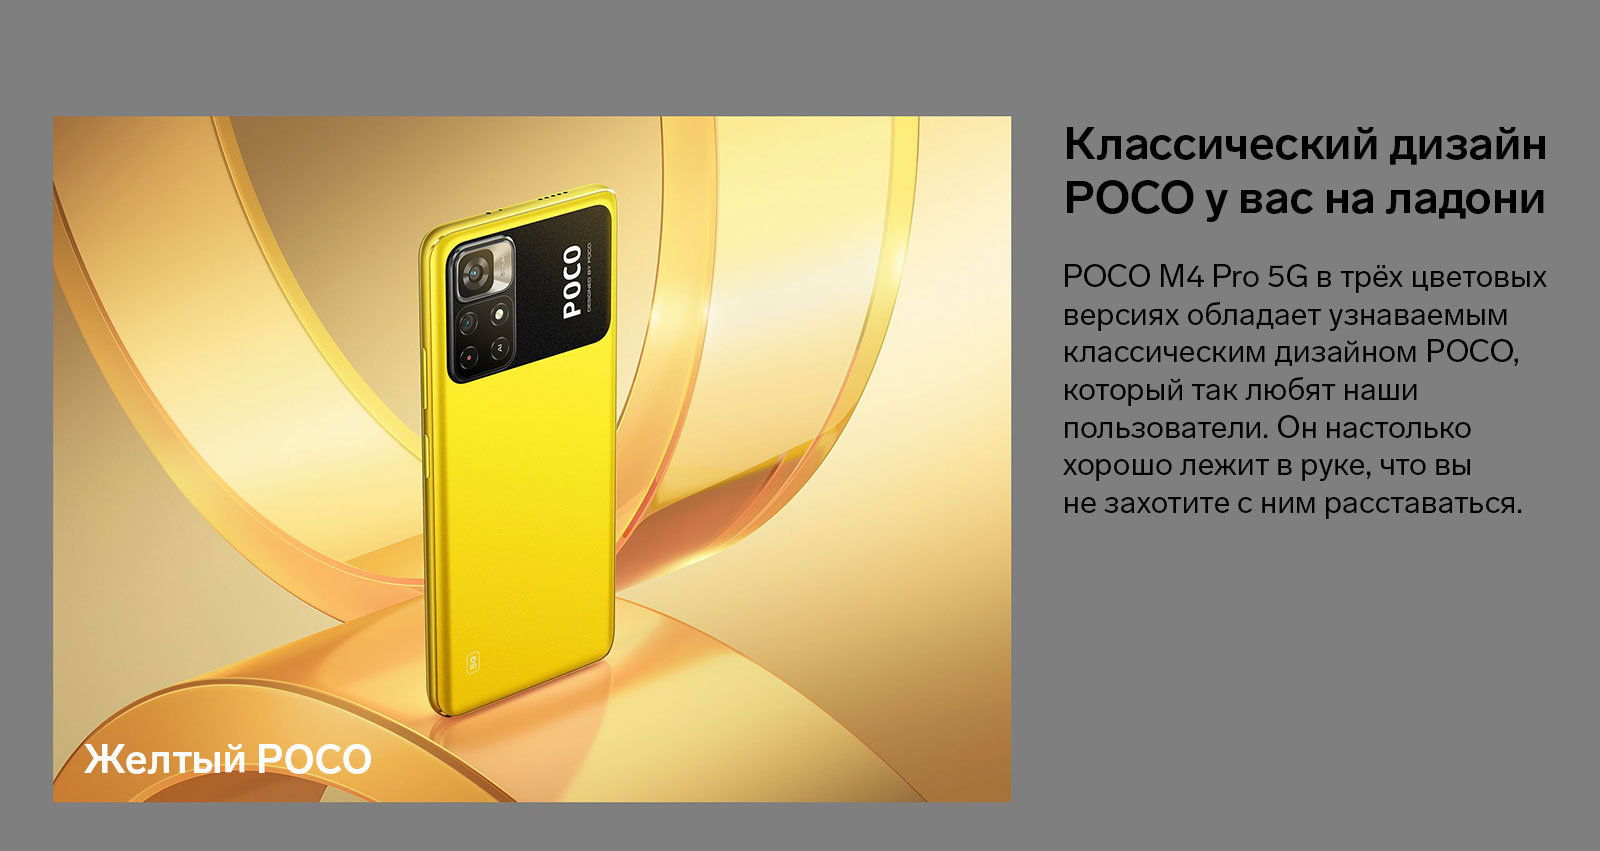 POCO M4 Pro 5G в трёх цветовых версиях обладает узнаваемым классическим дизайном POCO, который так любят наши пользователи. Он настолько хорошо лежит в руке, что вы не захотите с ним расставаться.